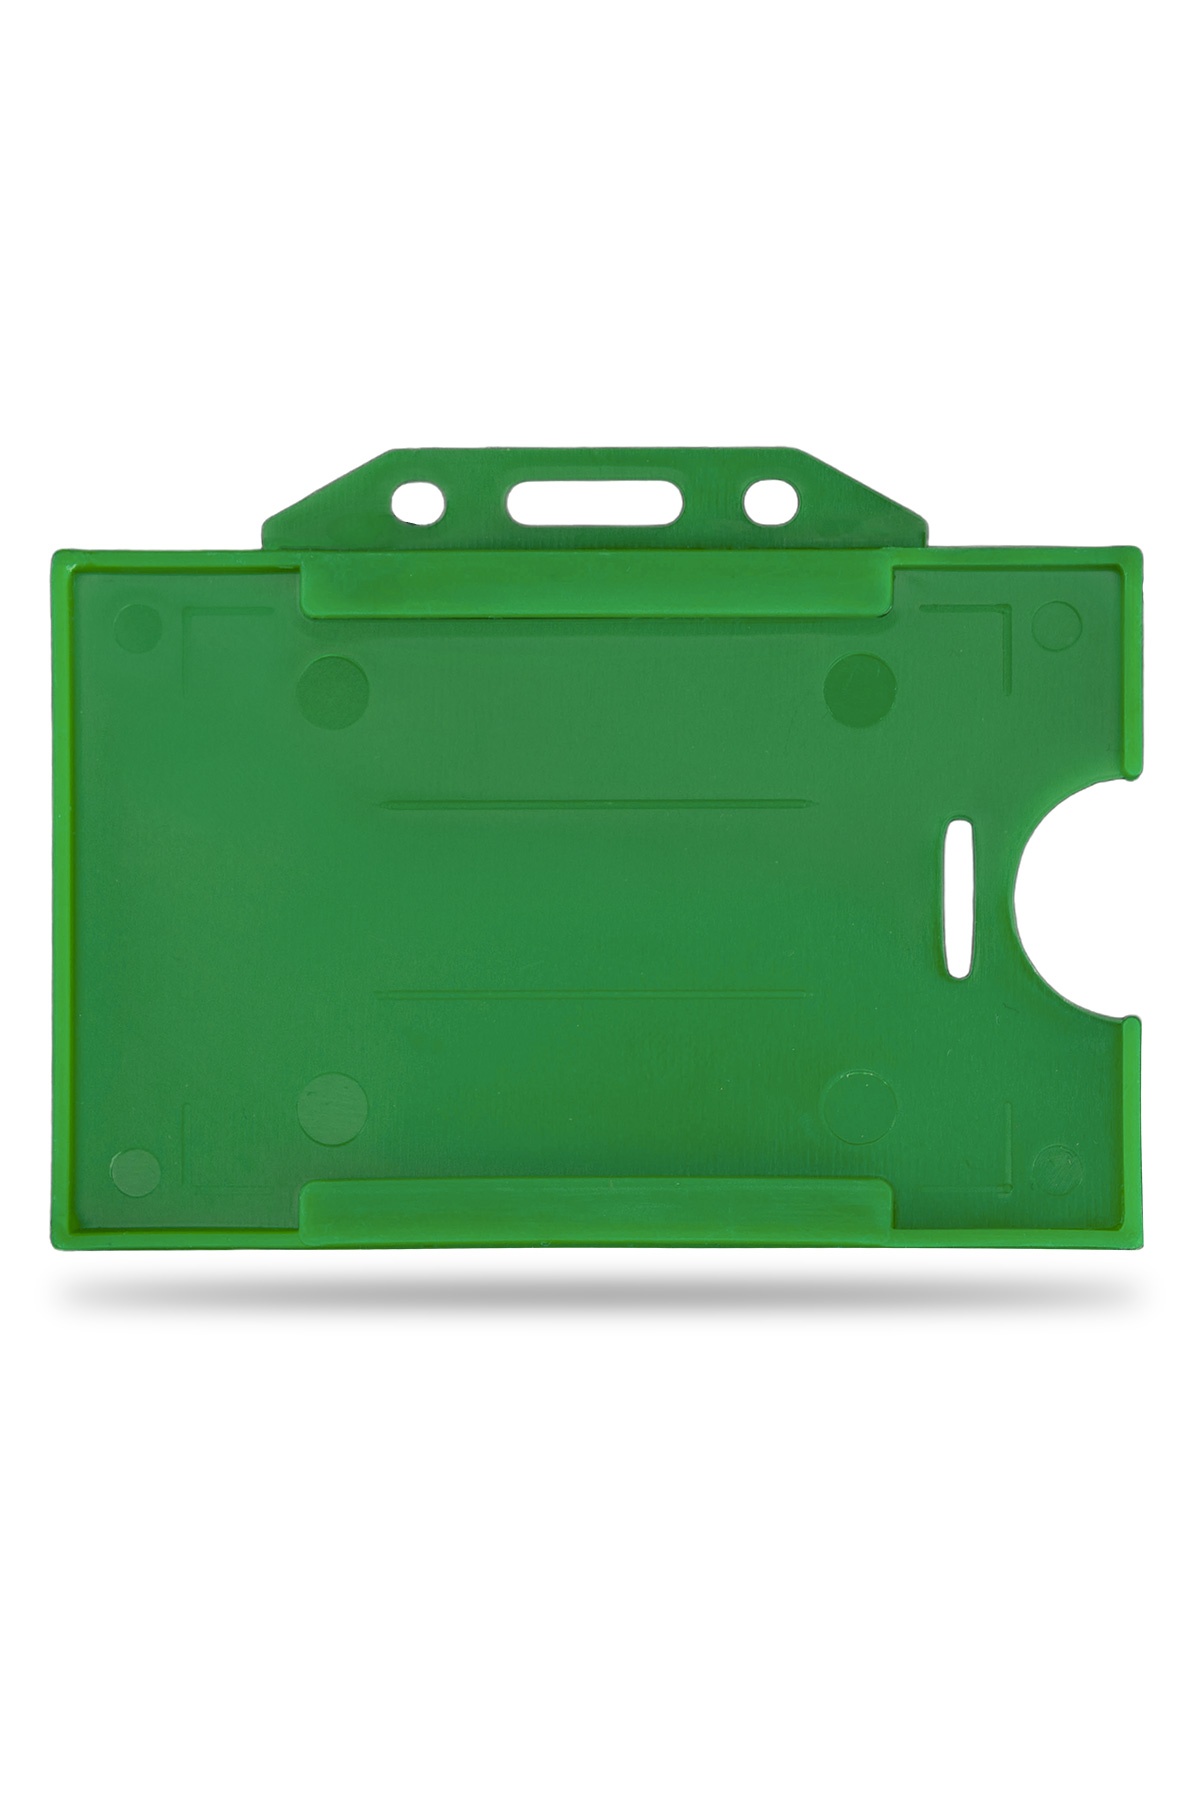 2 Adet Yeşil Yatay Kart Kabı Kart Kılıfı Yaka Kartı Kart Koruyucu - KRR0010